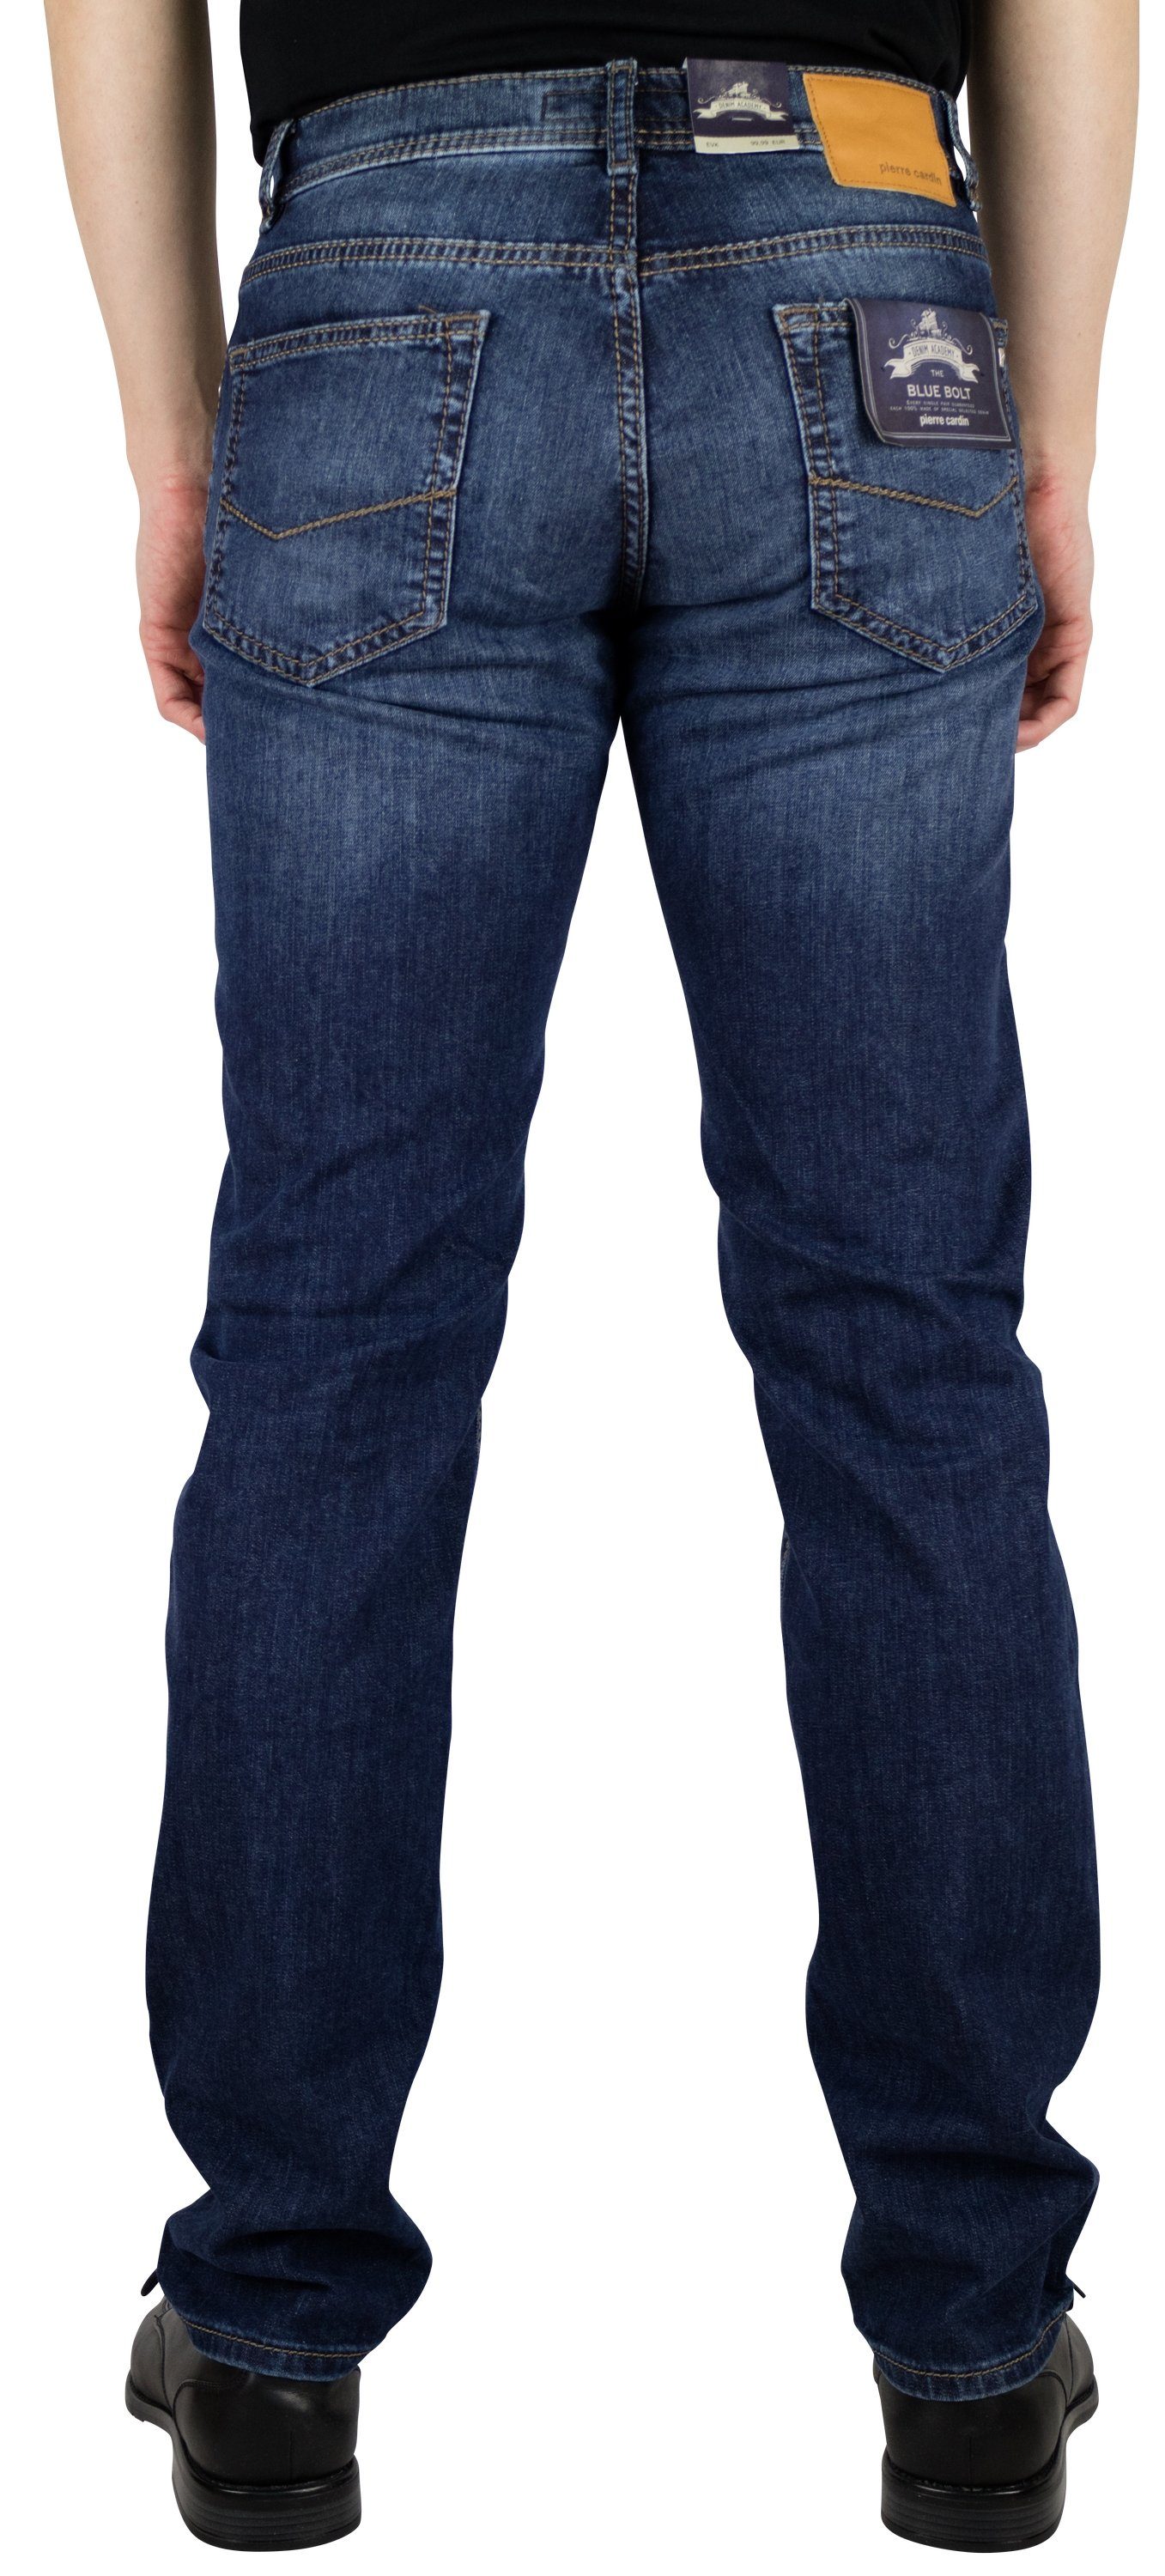 Pierre Cardin 5-Pocket-Jeans PIERRE 7144.09 dark vintage CARDIN washed used blue 3091 LYON